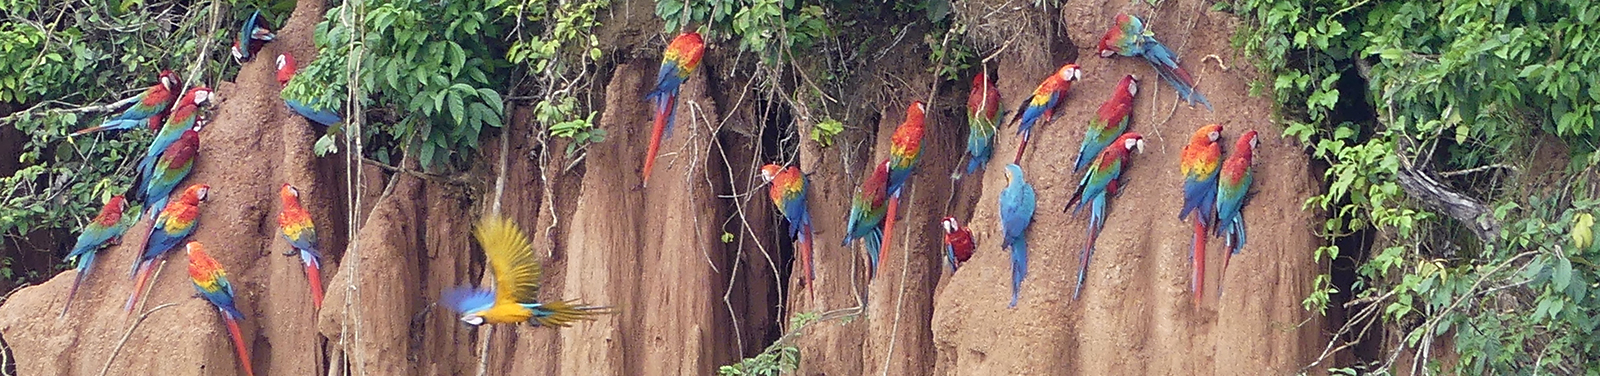 Papageien-Salzlecke, Tambopata, Peru 